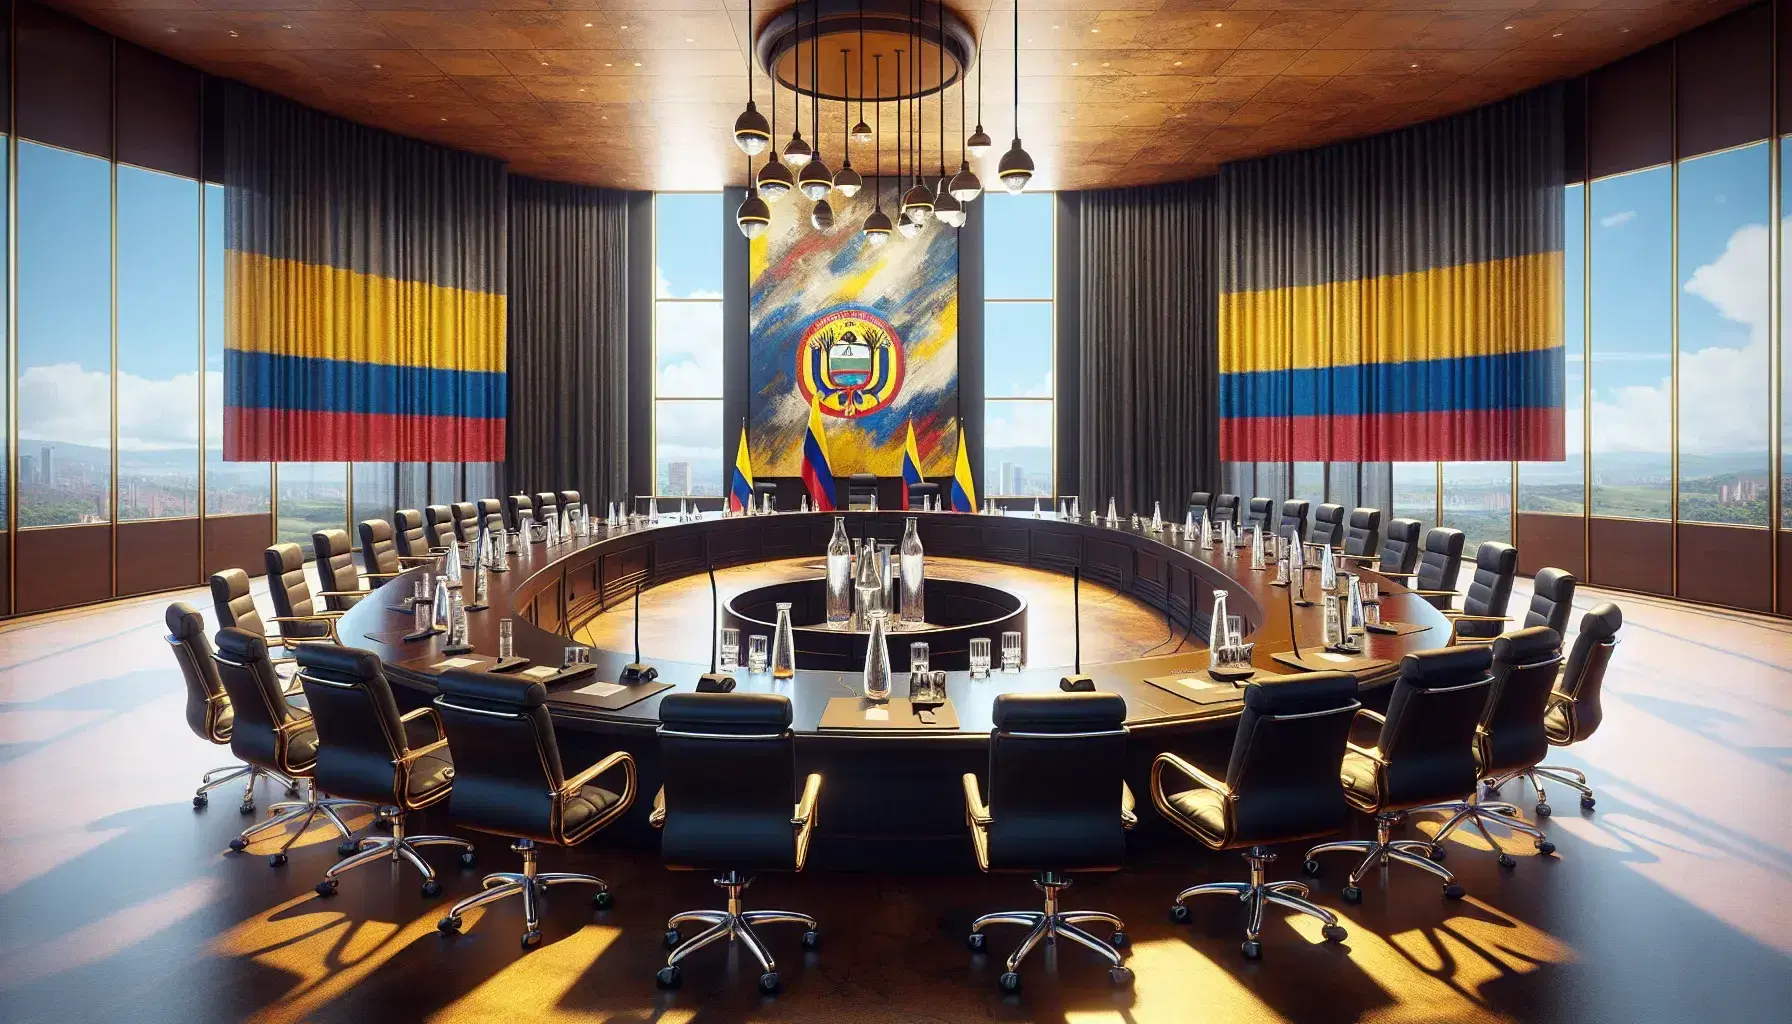 Sala de conferencias iluminada con mesa ovalada de madera, sillas de cuero negro, micrófonos, bandera de Colombia y pintura abstracta.